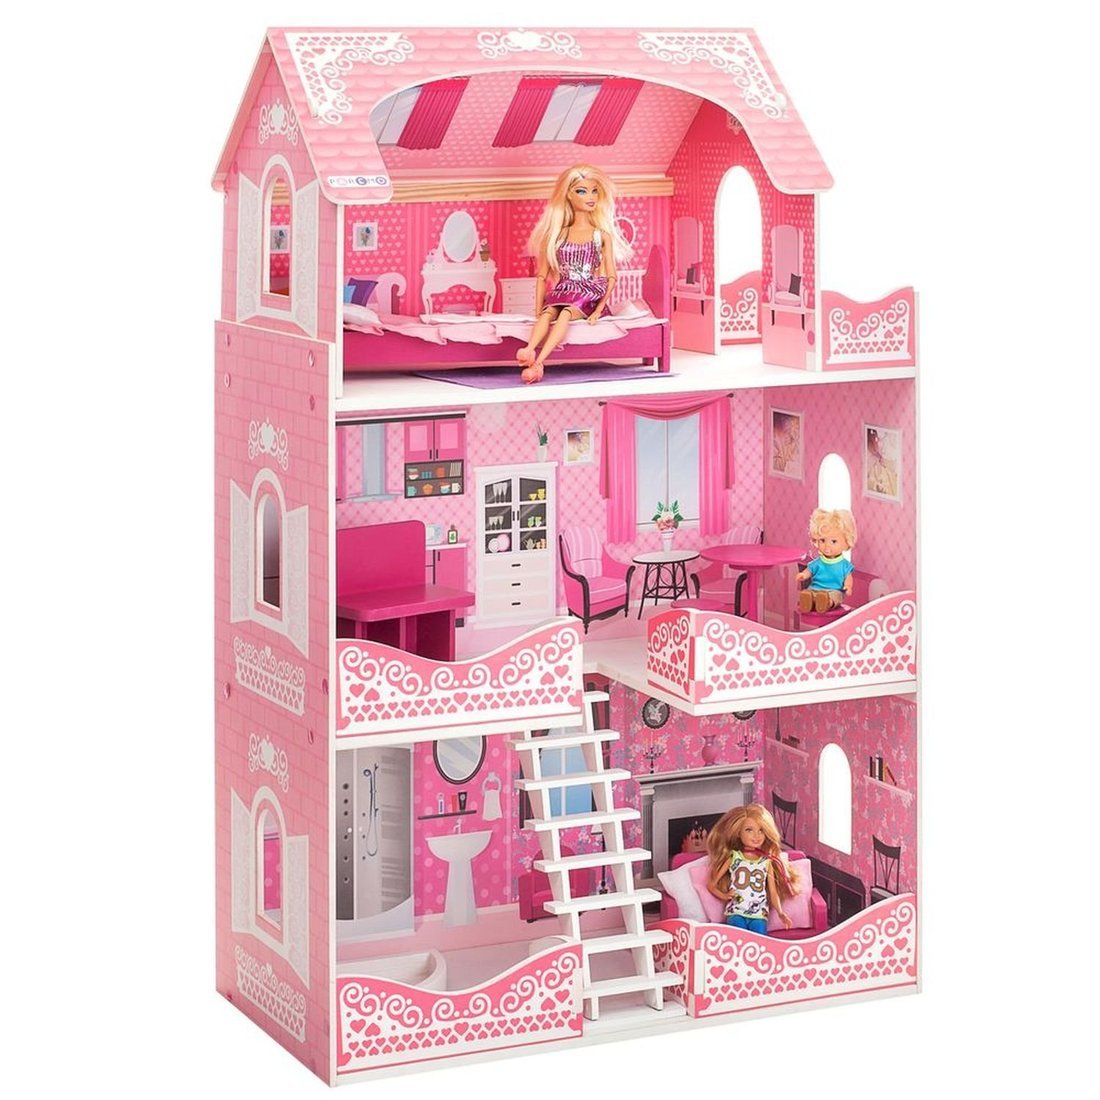 Кукольный домик Розет Шери, для кукол до 30 см (7 предметов мебели и интерьера)